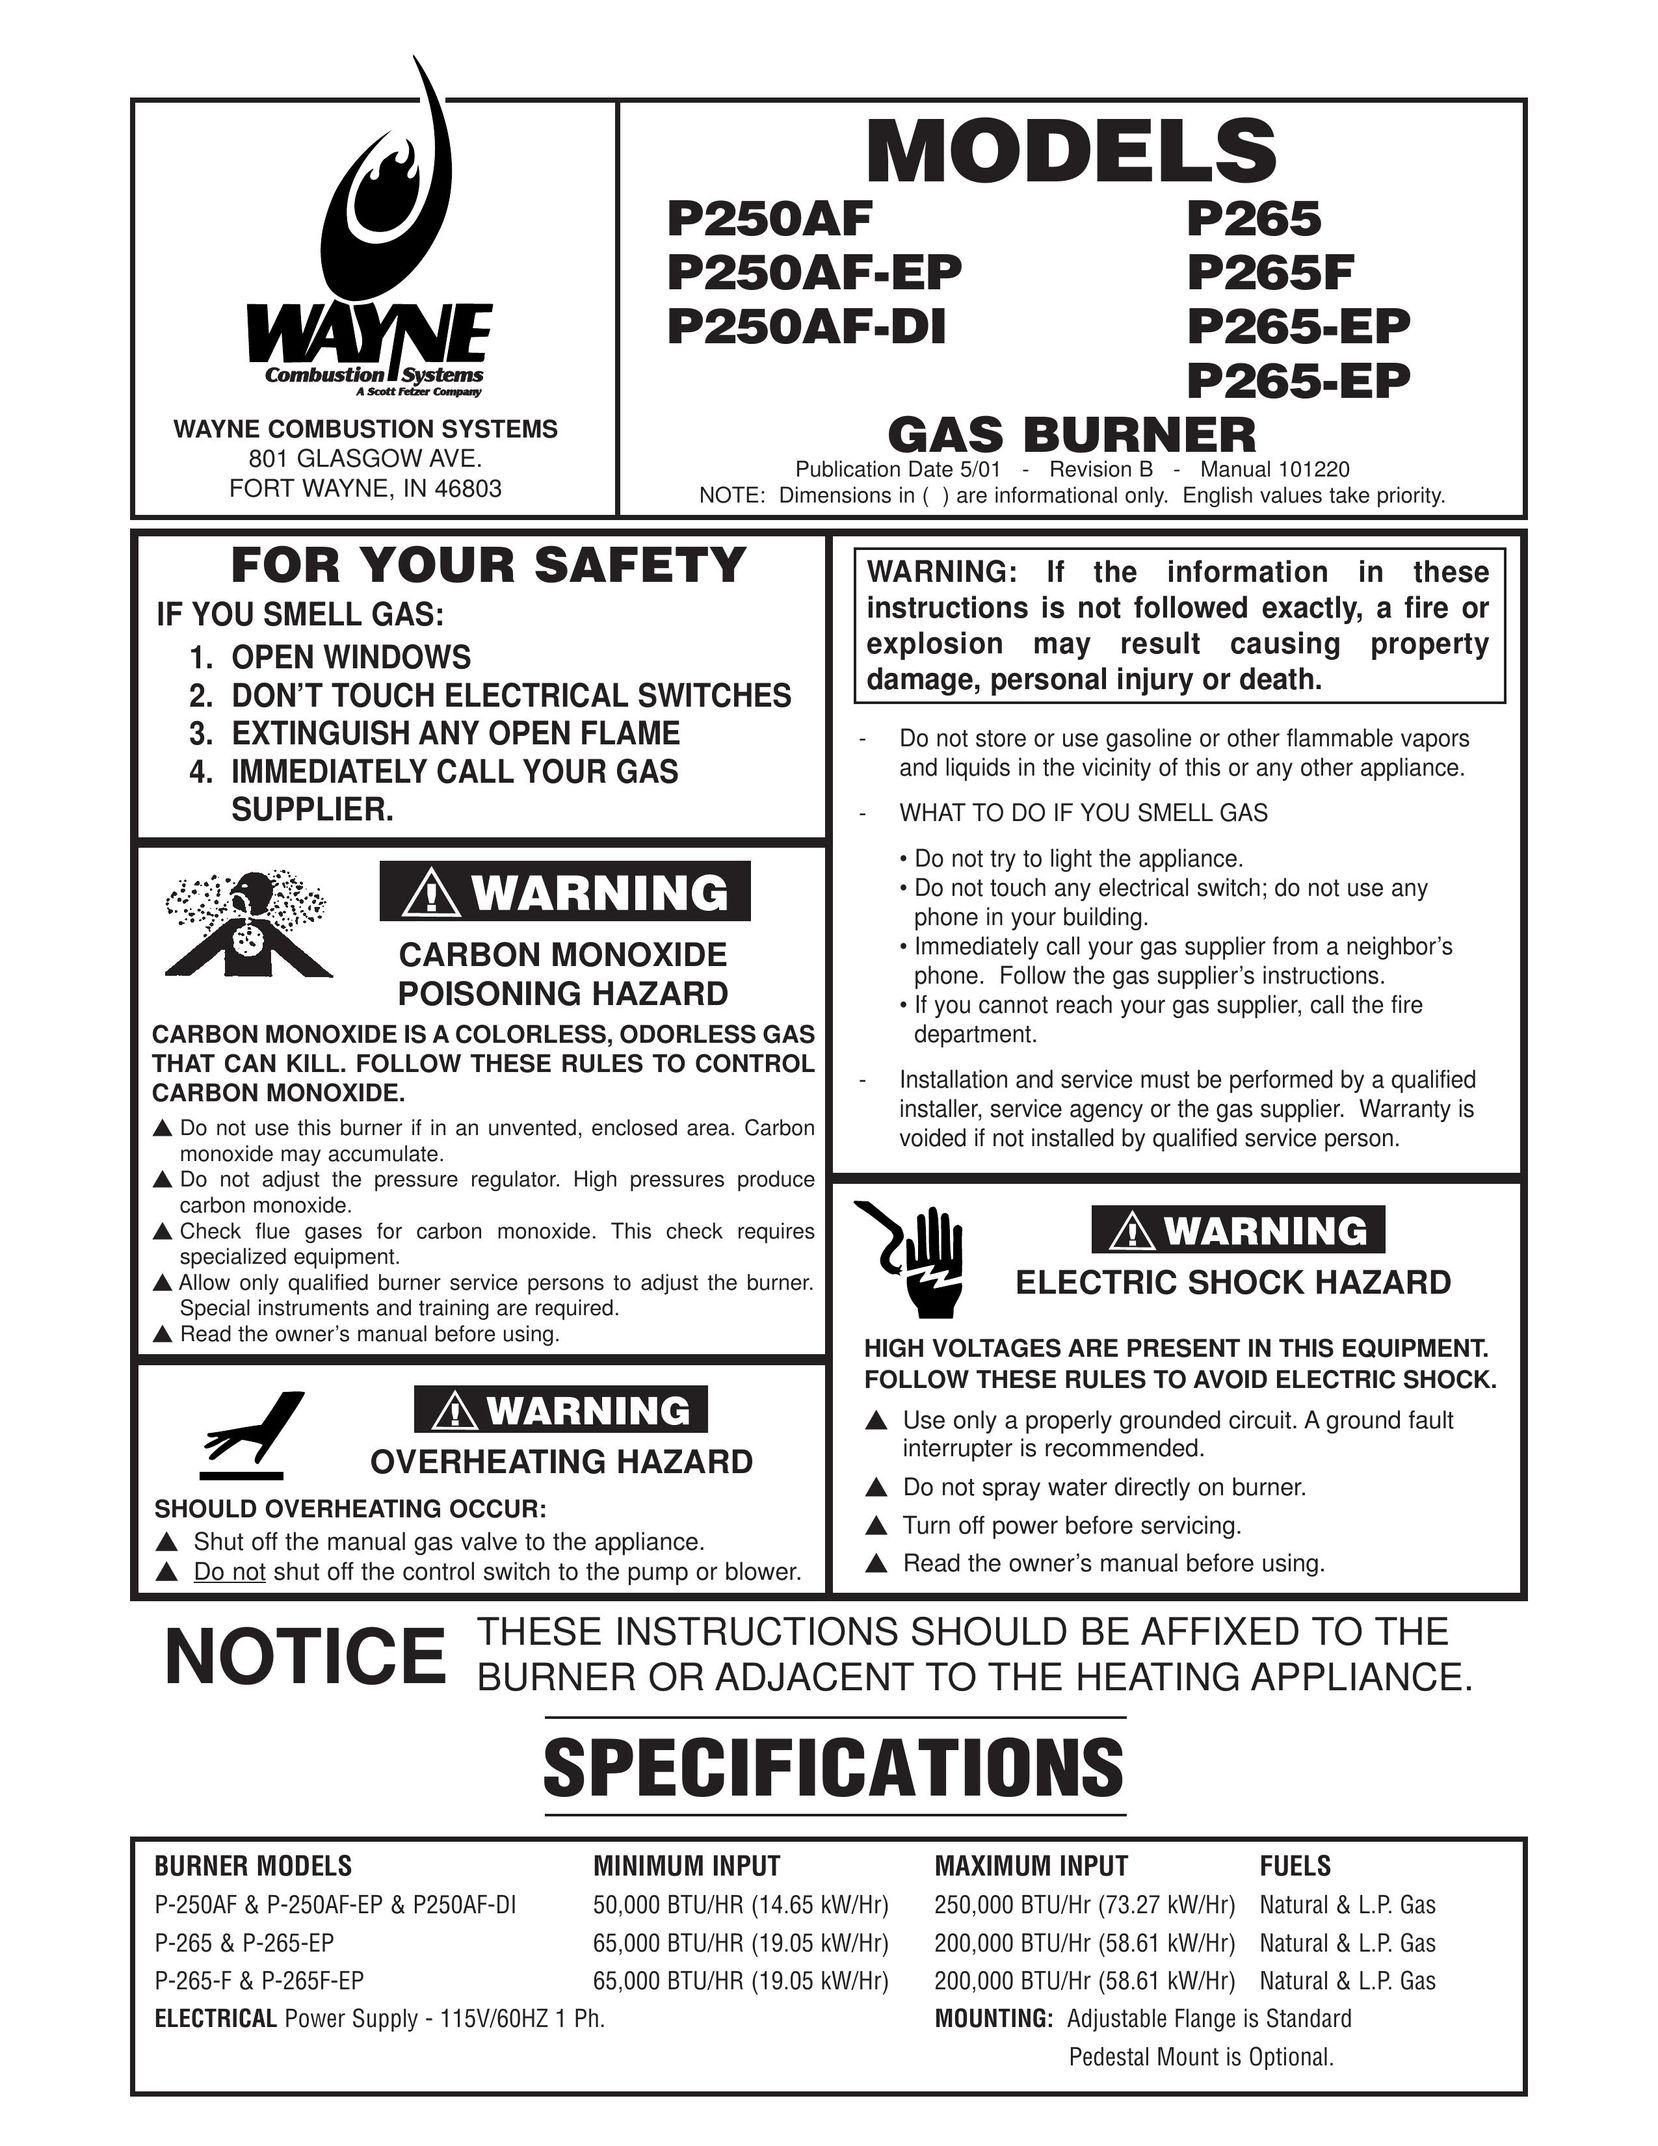 Wayne P250AF Burner User Manual